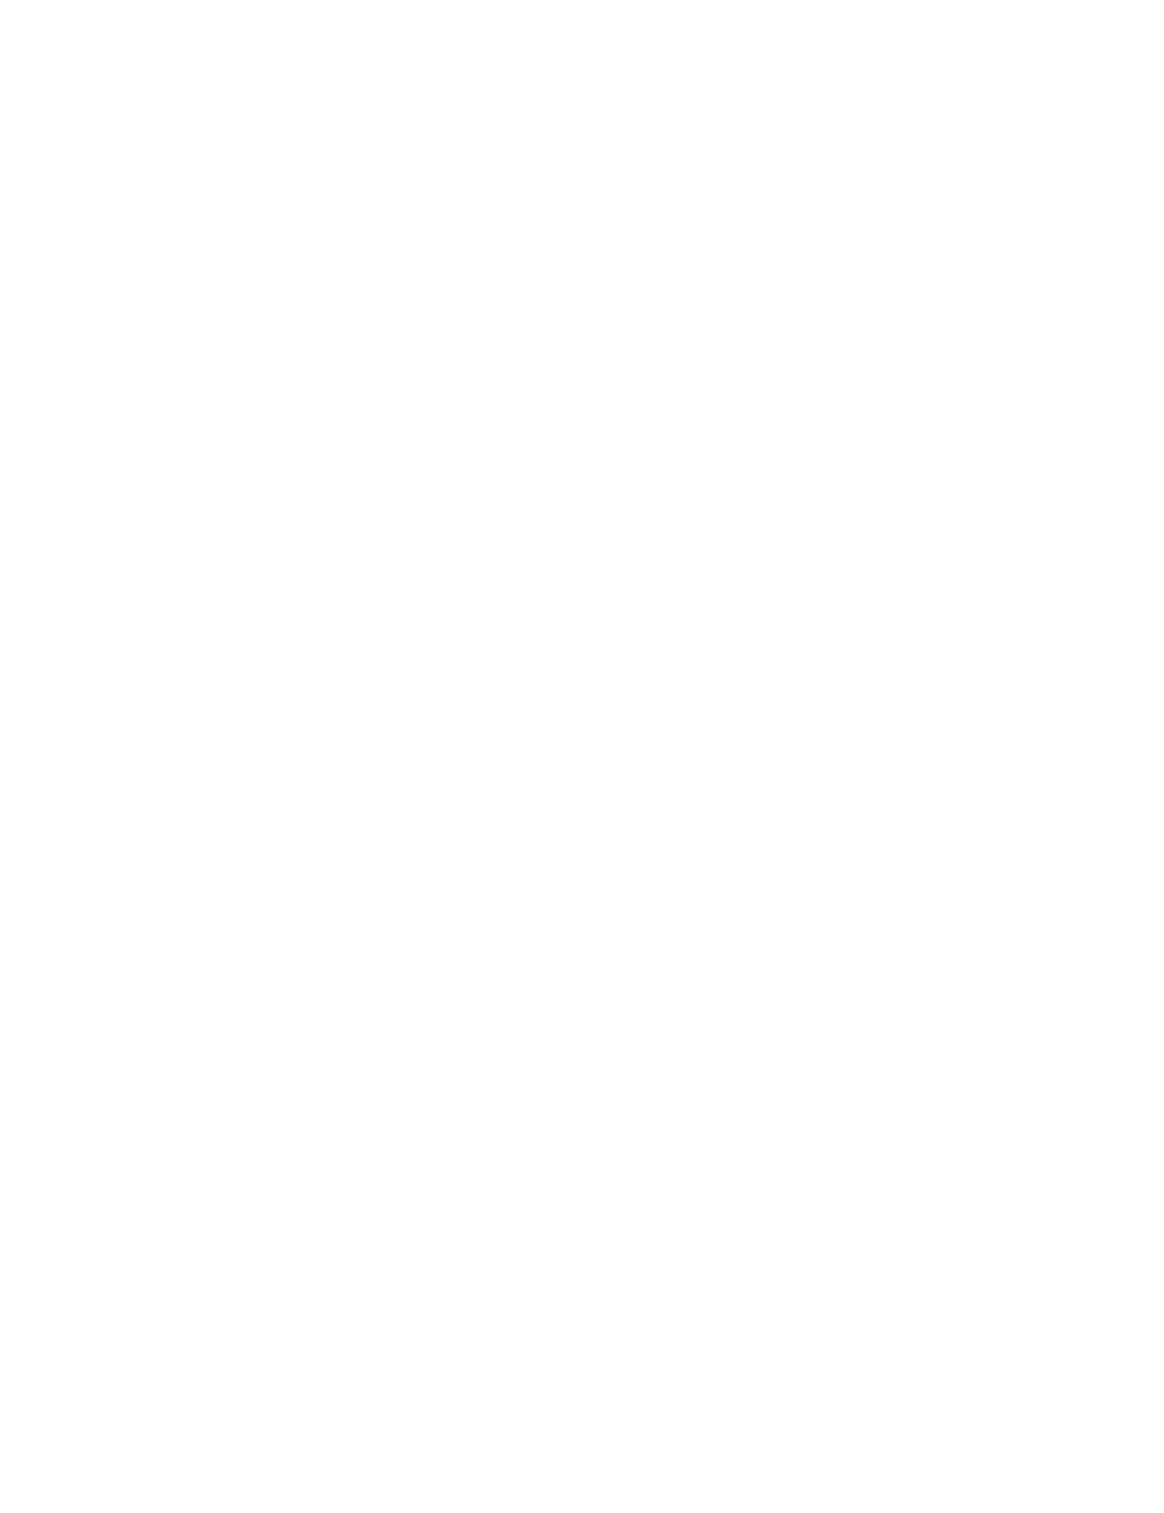 Bezeq Logo groß für dunkle Hintergründe (transparentes PNG)